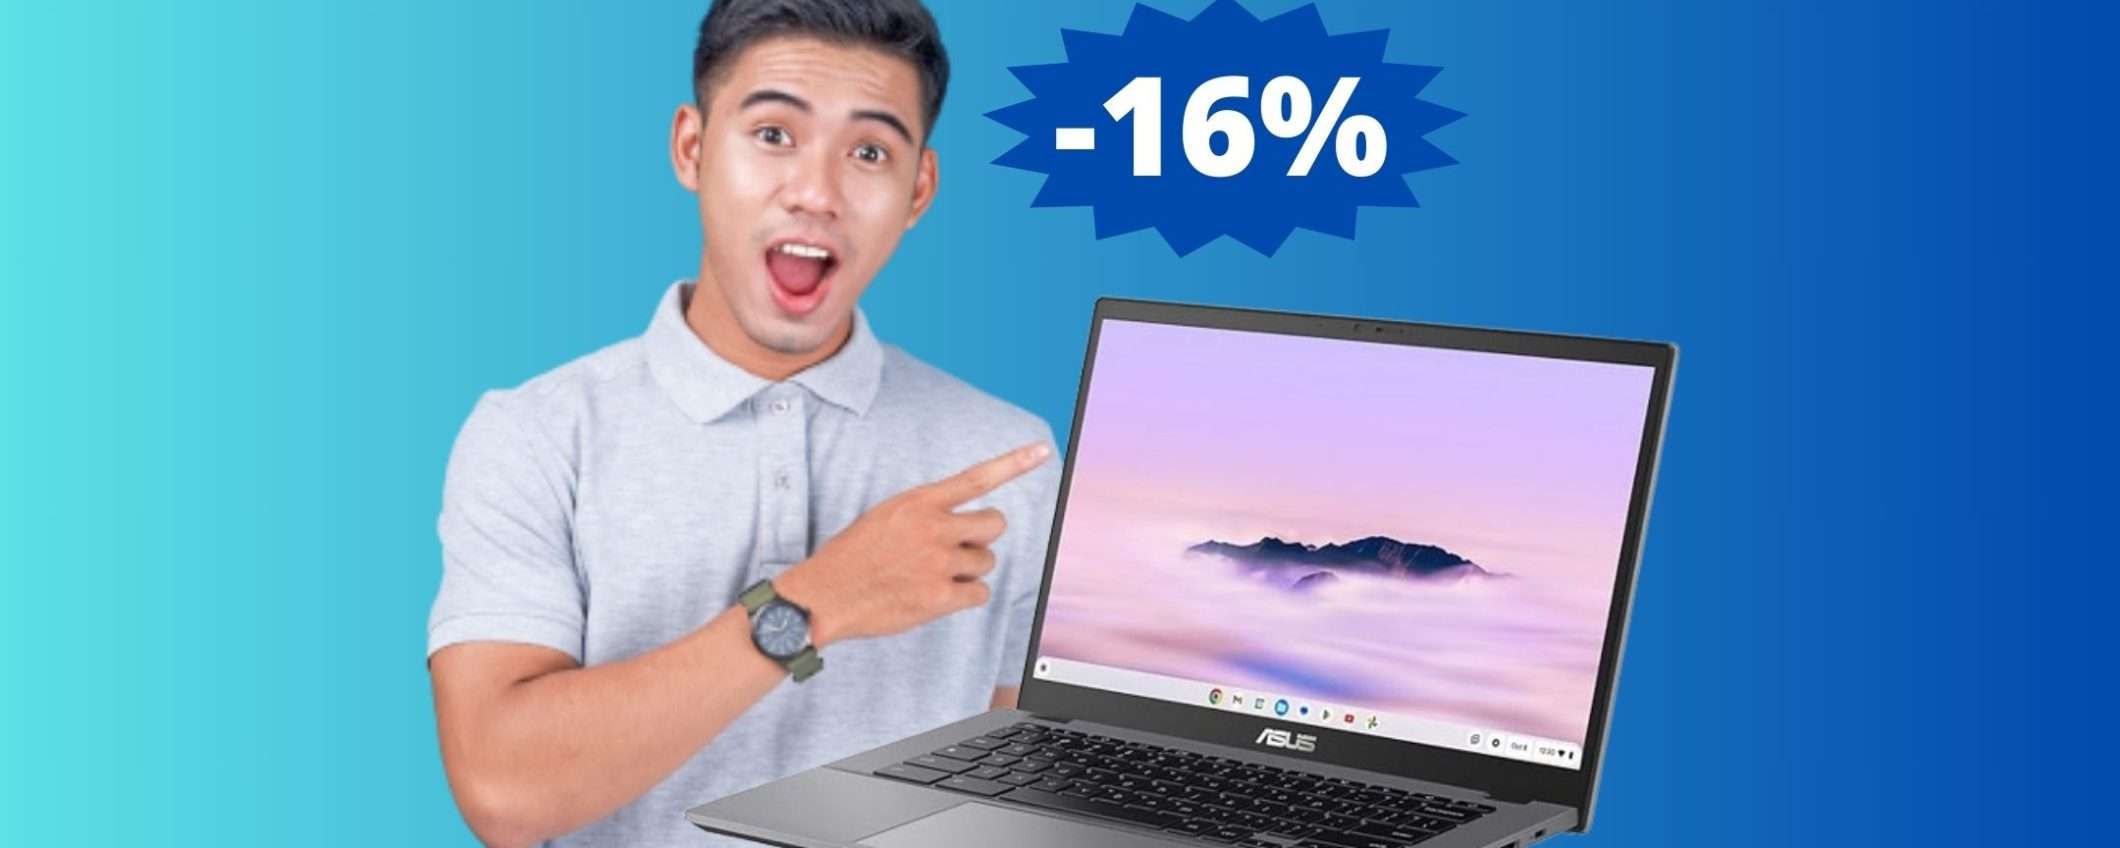 ASUS Chromebook Plus: SUPER sconto del 16% su Amazon